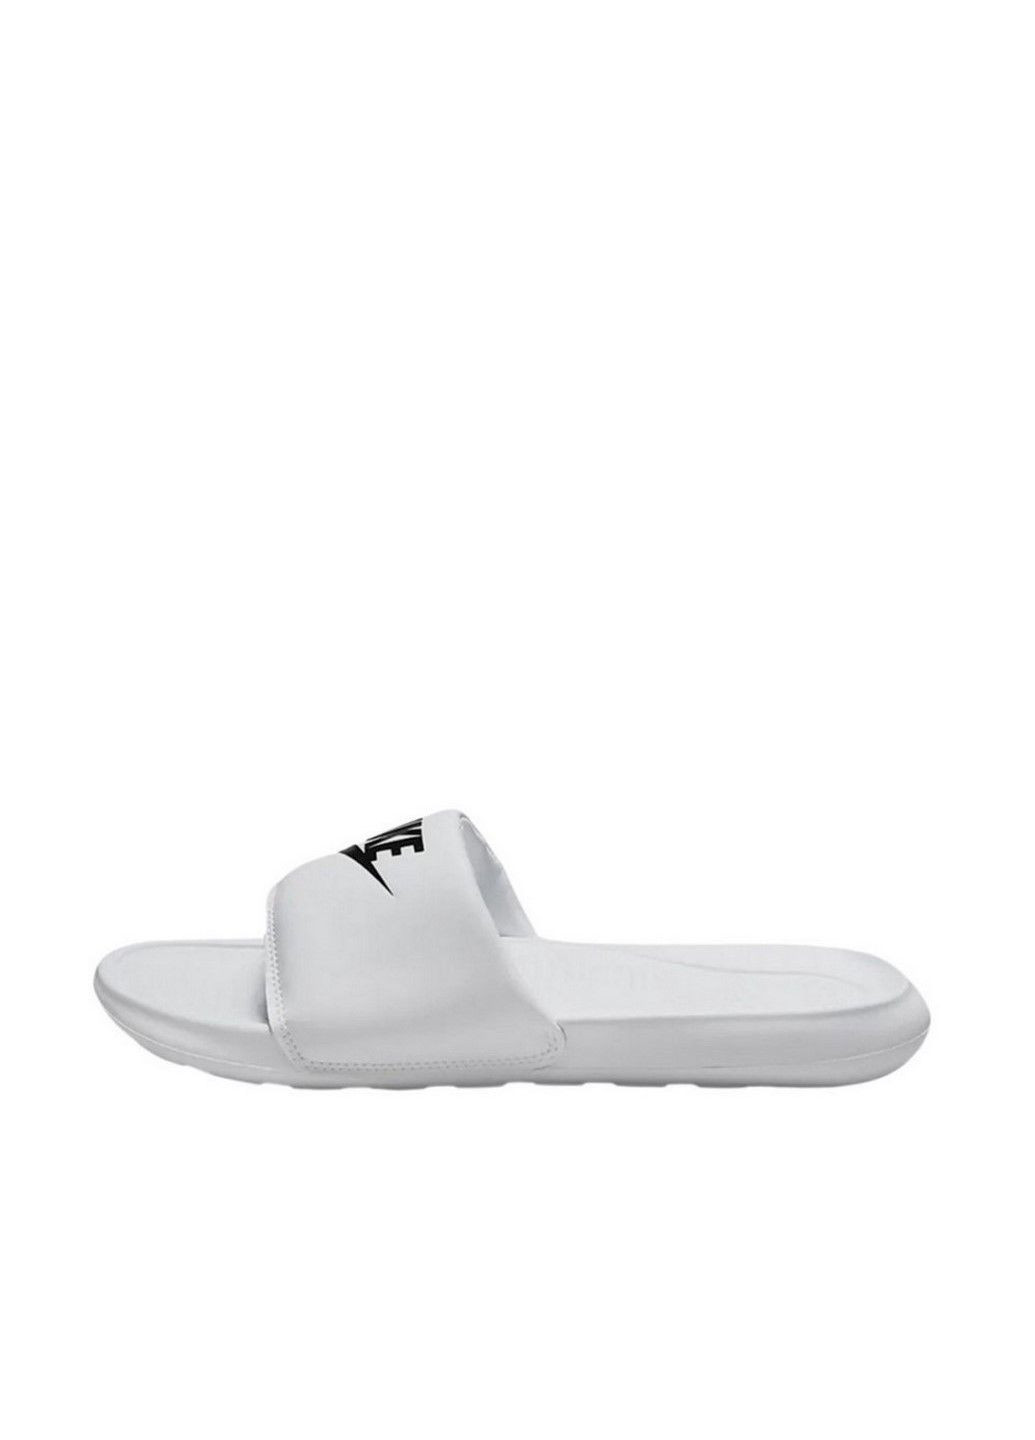 Белые тапочки (тапочки) victori one slide cn9677-100 Nike